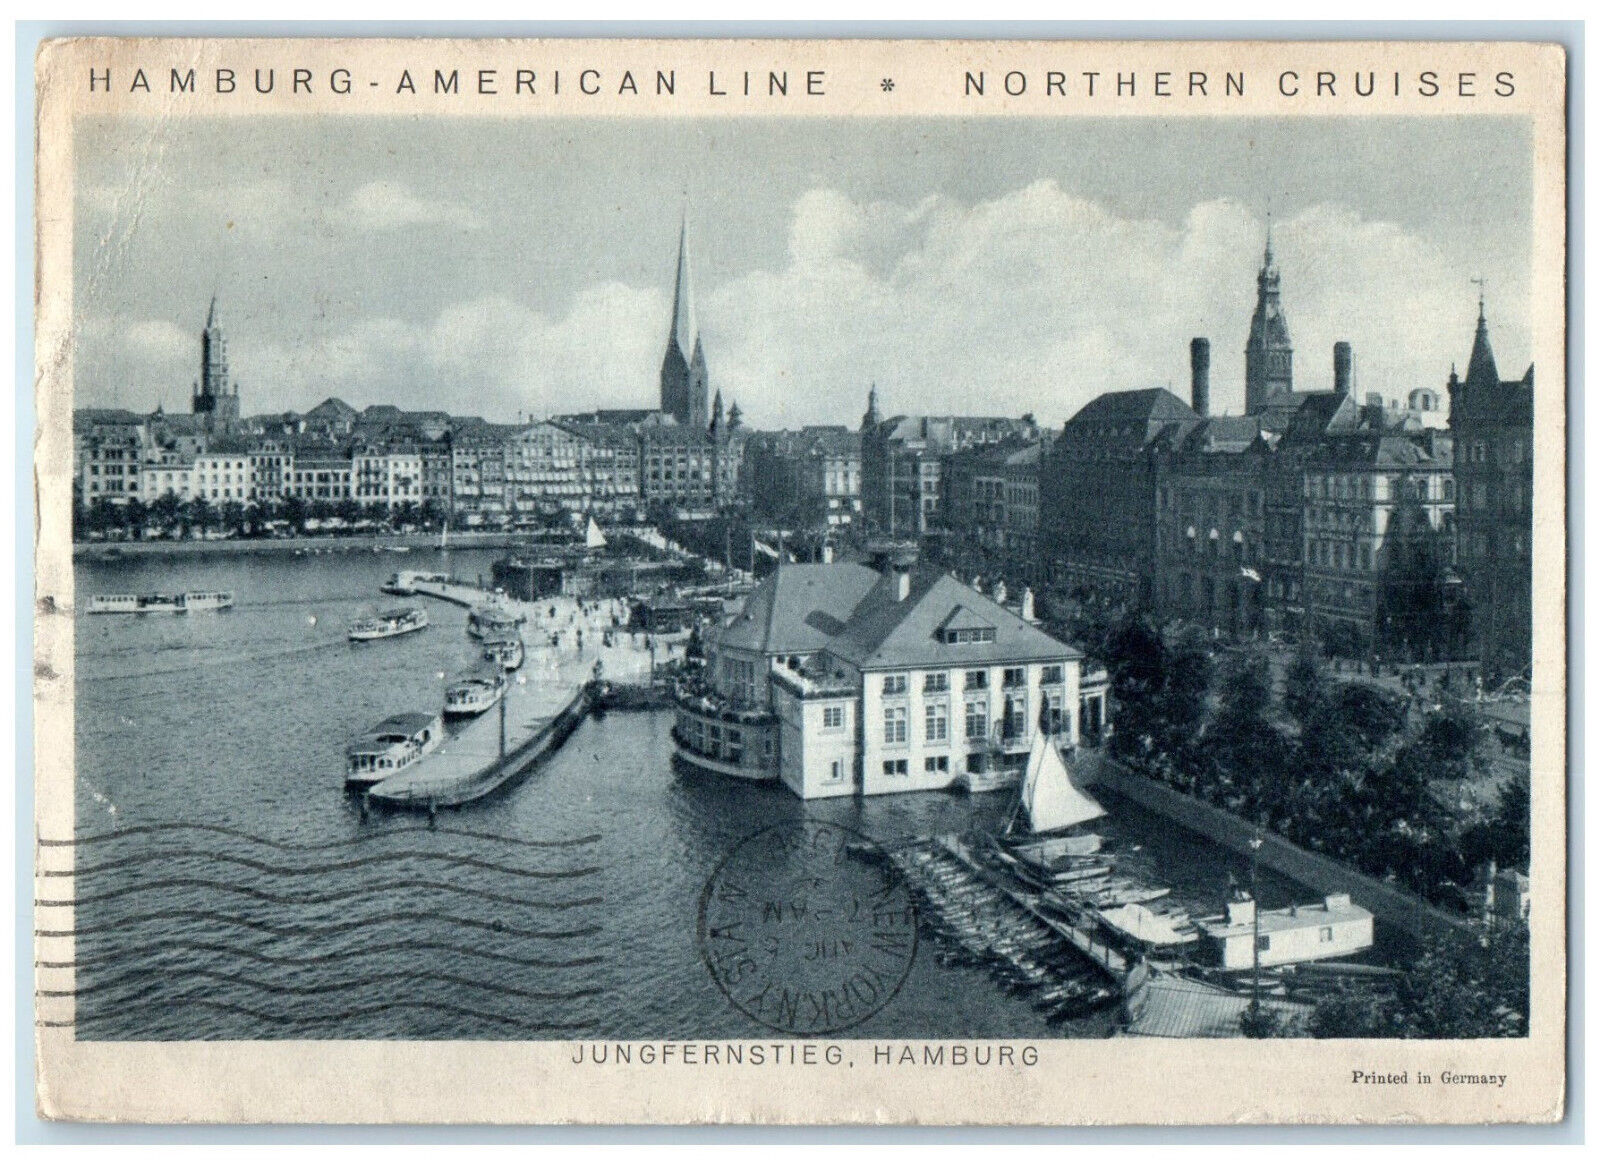 1930 Reliance Steamer Cruise Hamburg American Line Jungfernstieg Postcard